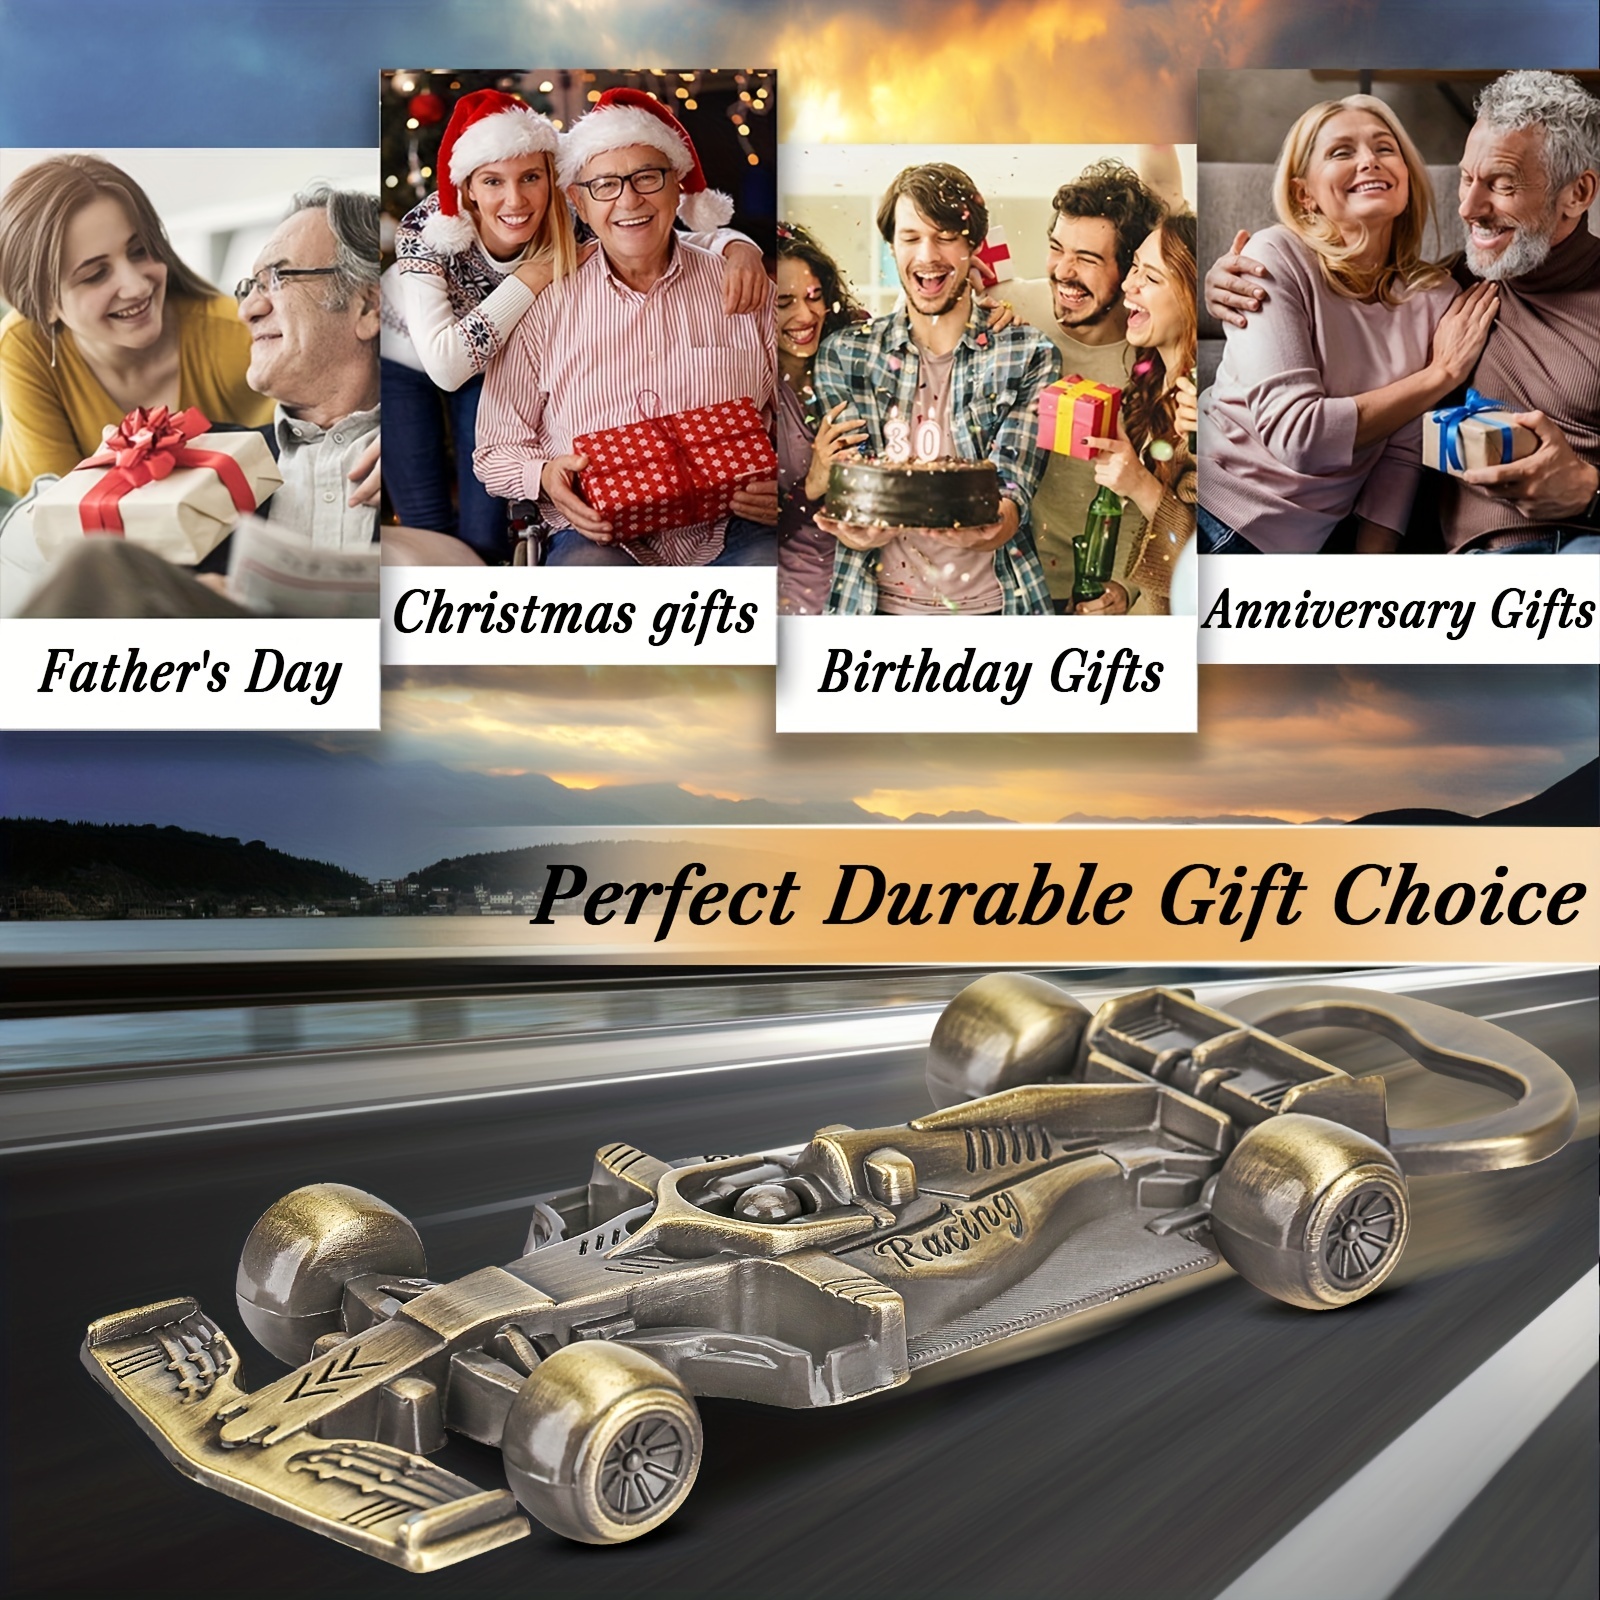 Mug F1 Dans cette maison - Cadeau de Noël - Course de Formule 1